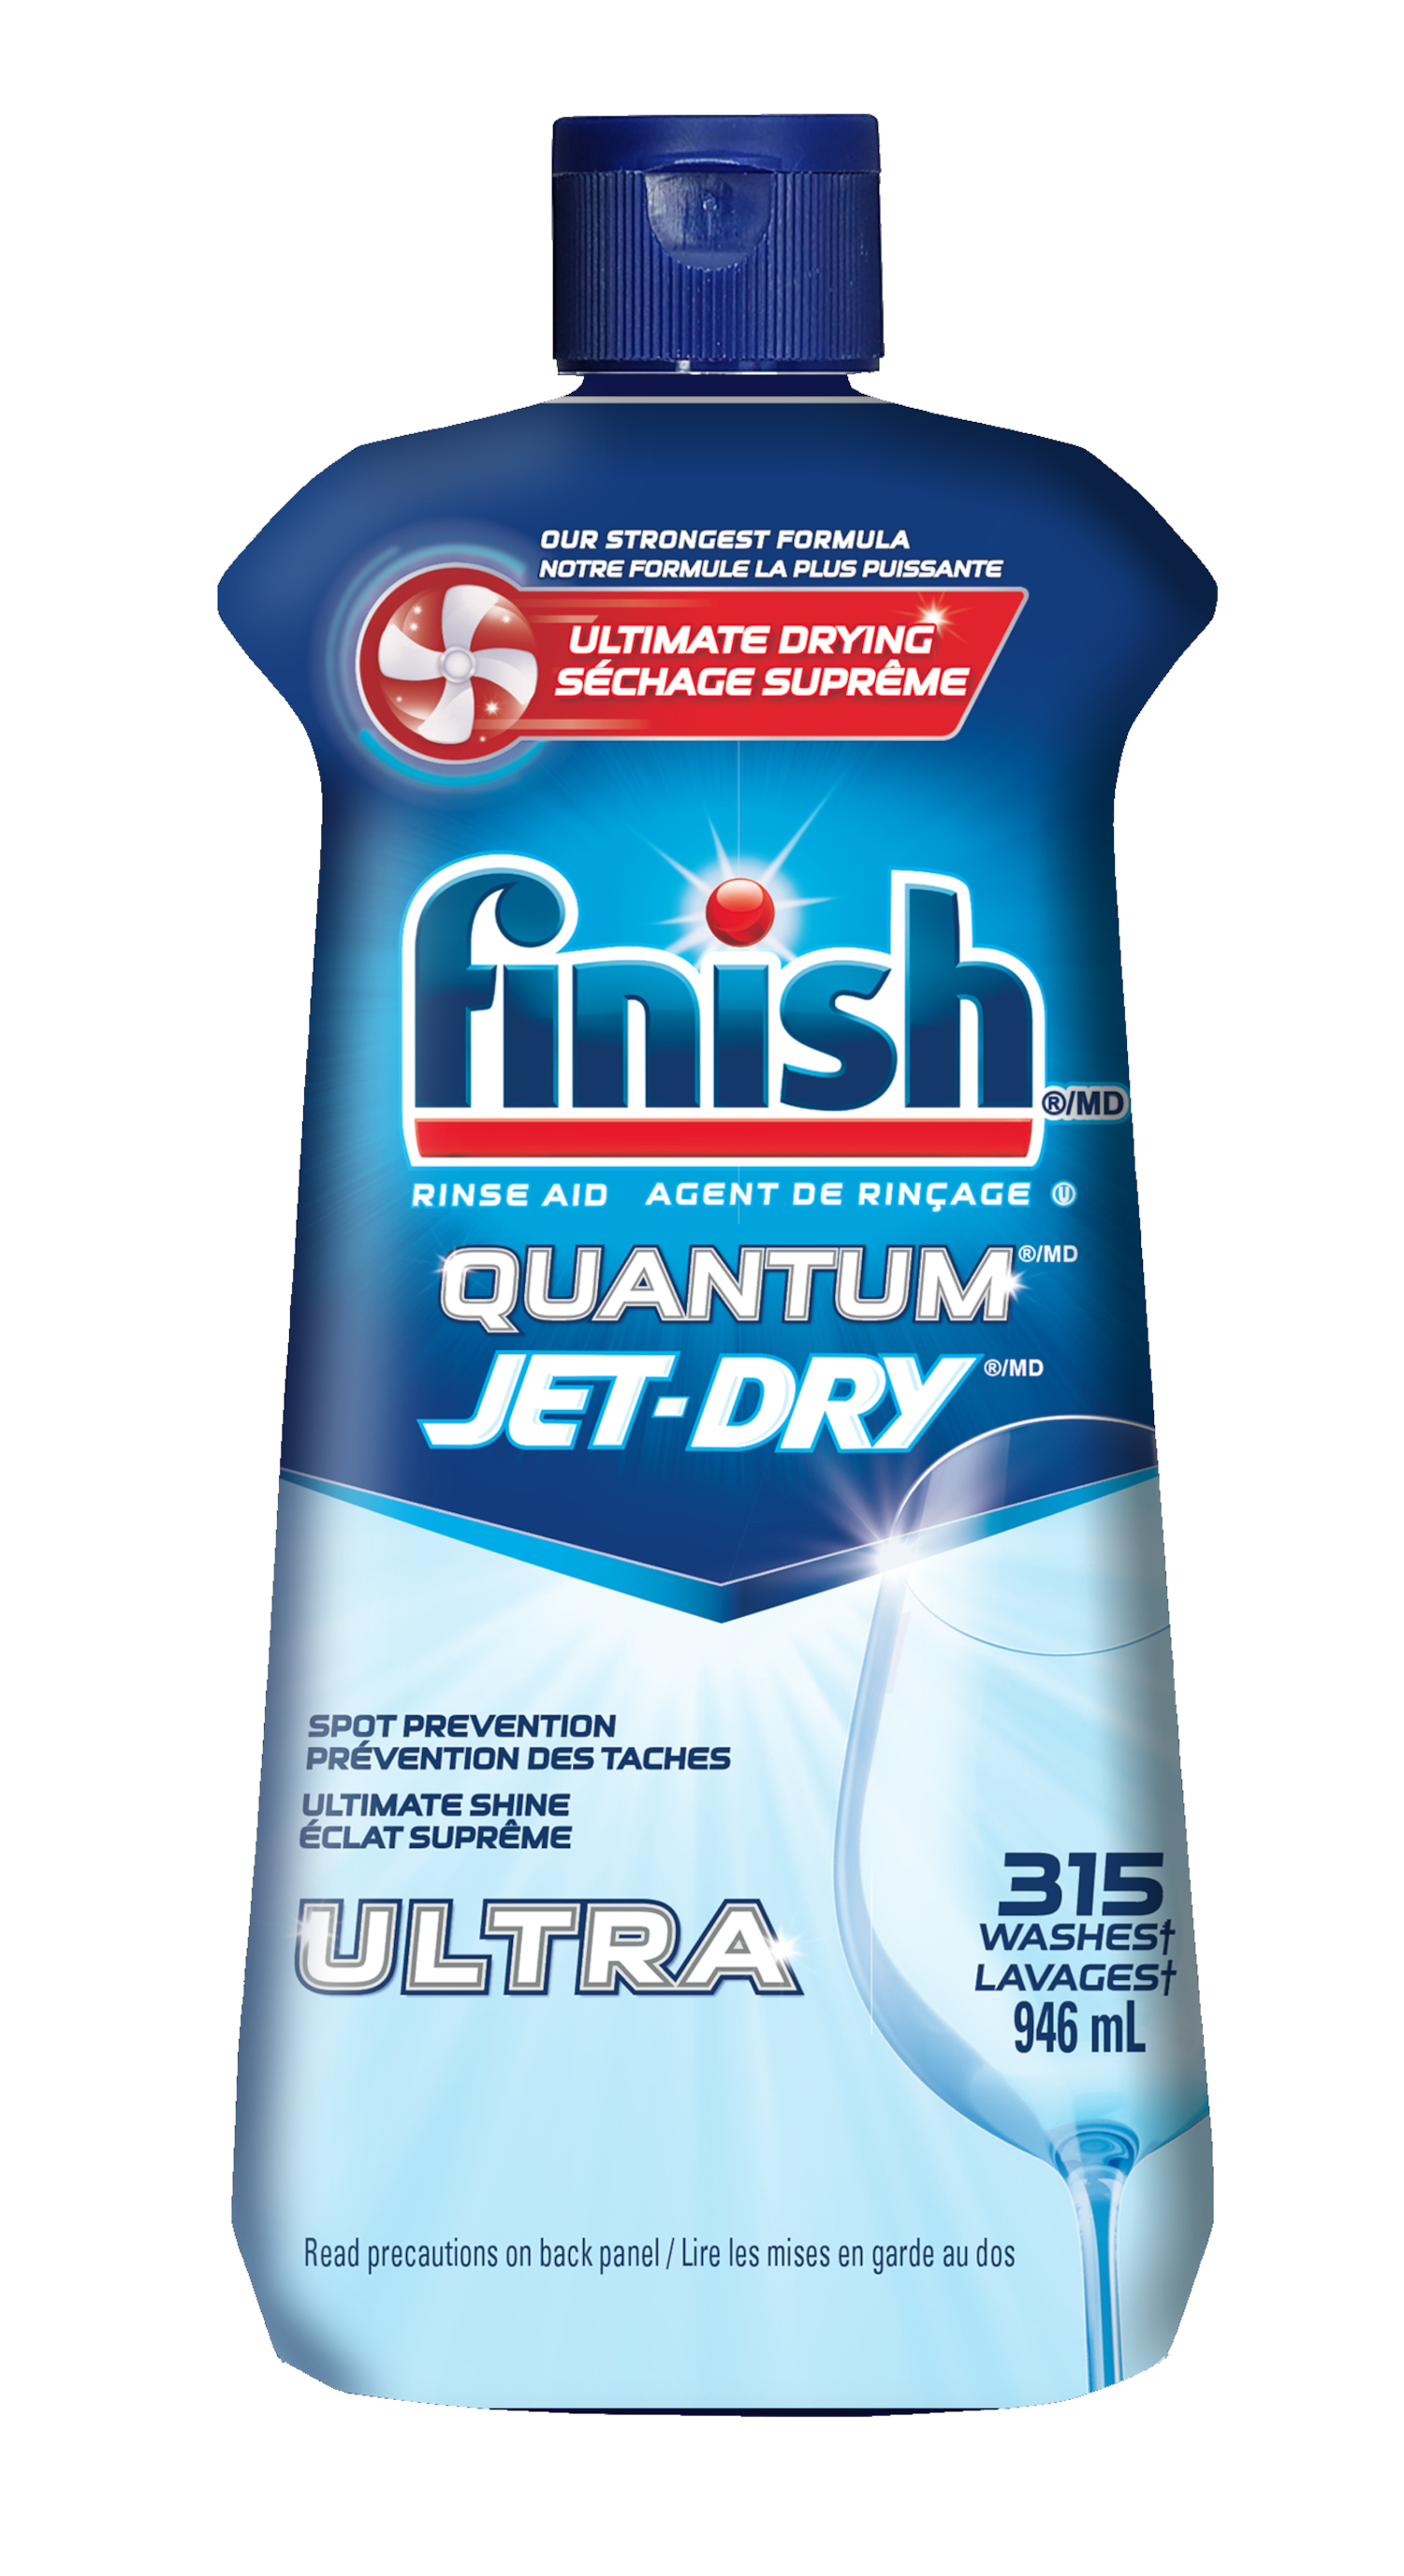 Finish Jet Dry Dishwasher Rinse Aid - 23 fl oz bottle